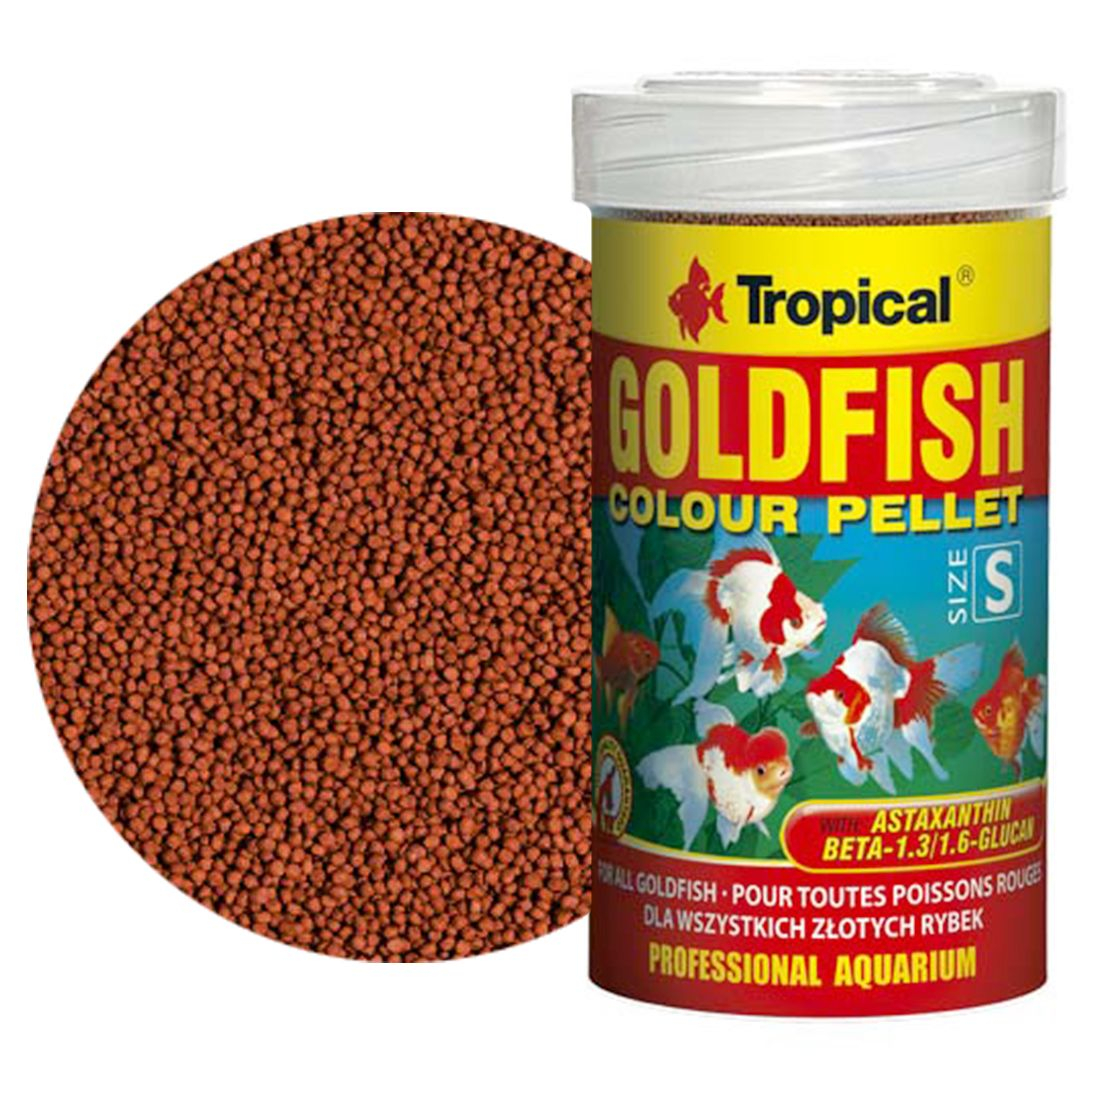 TROPICAL Goldfish Colour Pellet S 100 ml / 45 g